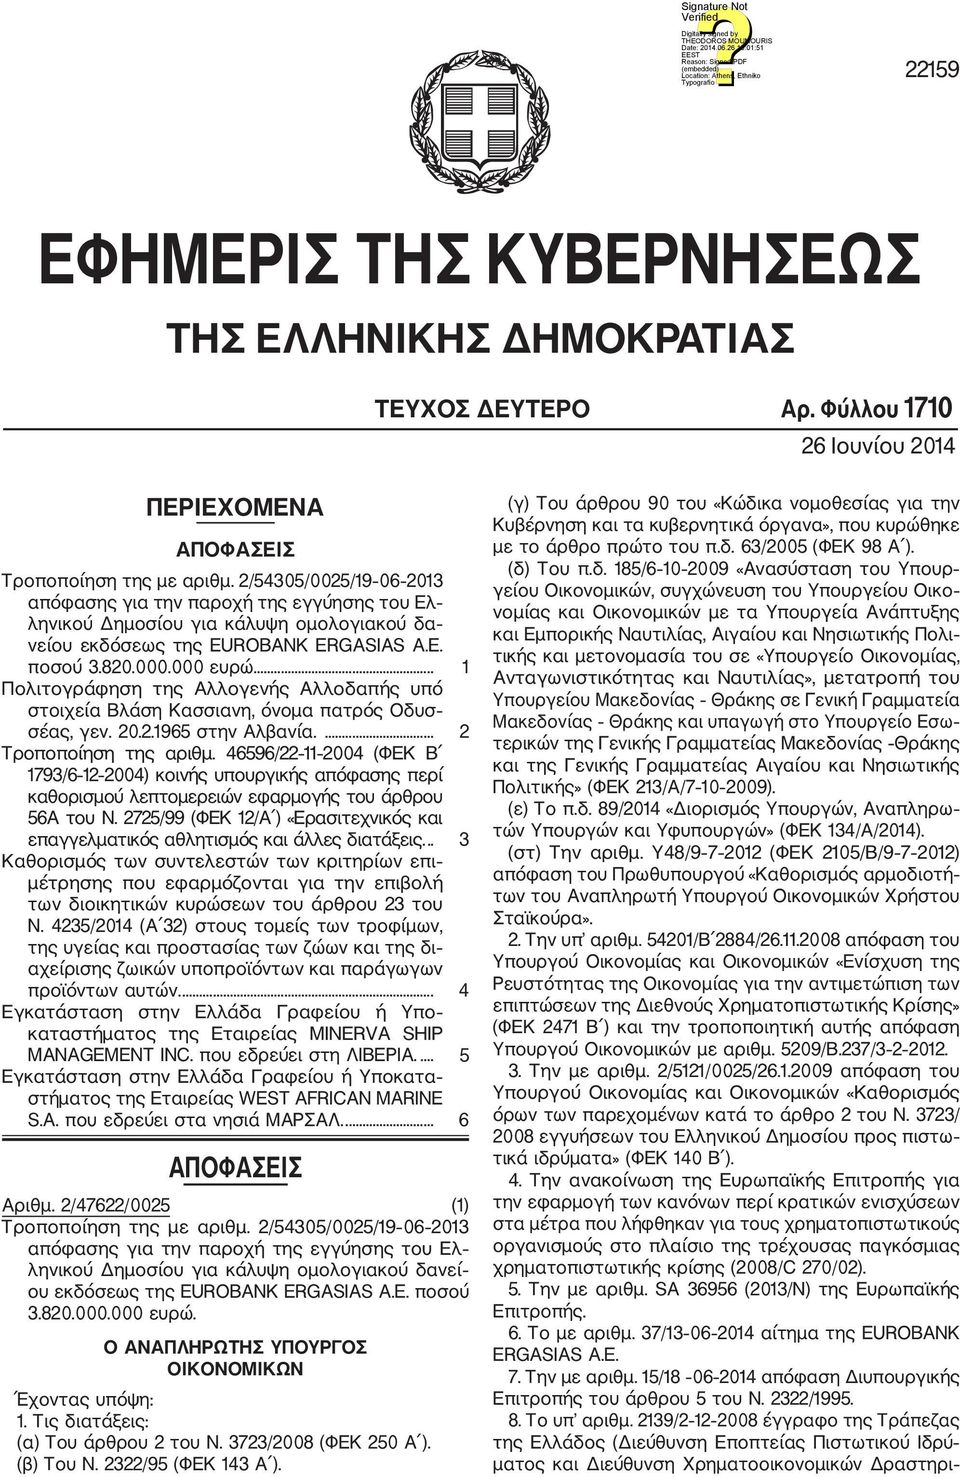 ... 1 Πολιτογράφηση της Αλλογενής Αλλοδαπής υπό στοιχεία Βλάση Κασσιανη, όνομα πατρός Οδυσ σέας, γεν. 20.2.1965 στην Αλβανία.... 2 Τροποποίηση της αριθμ.